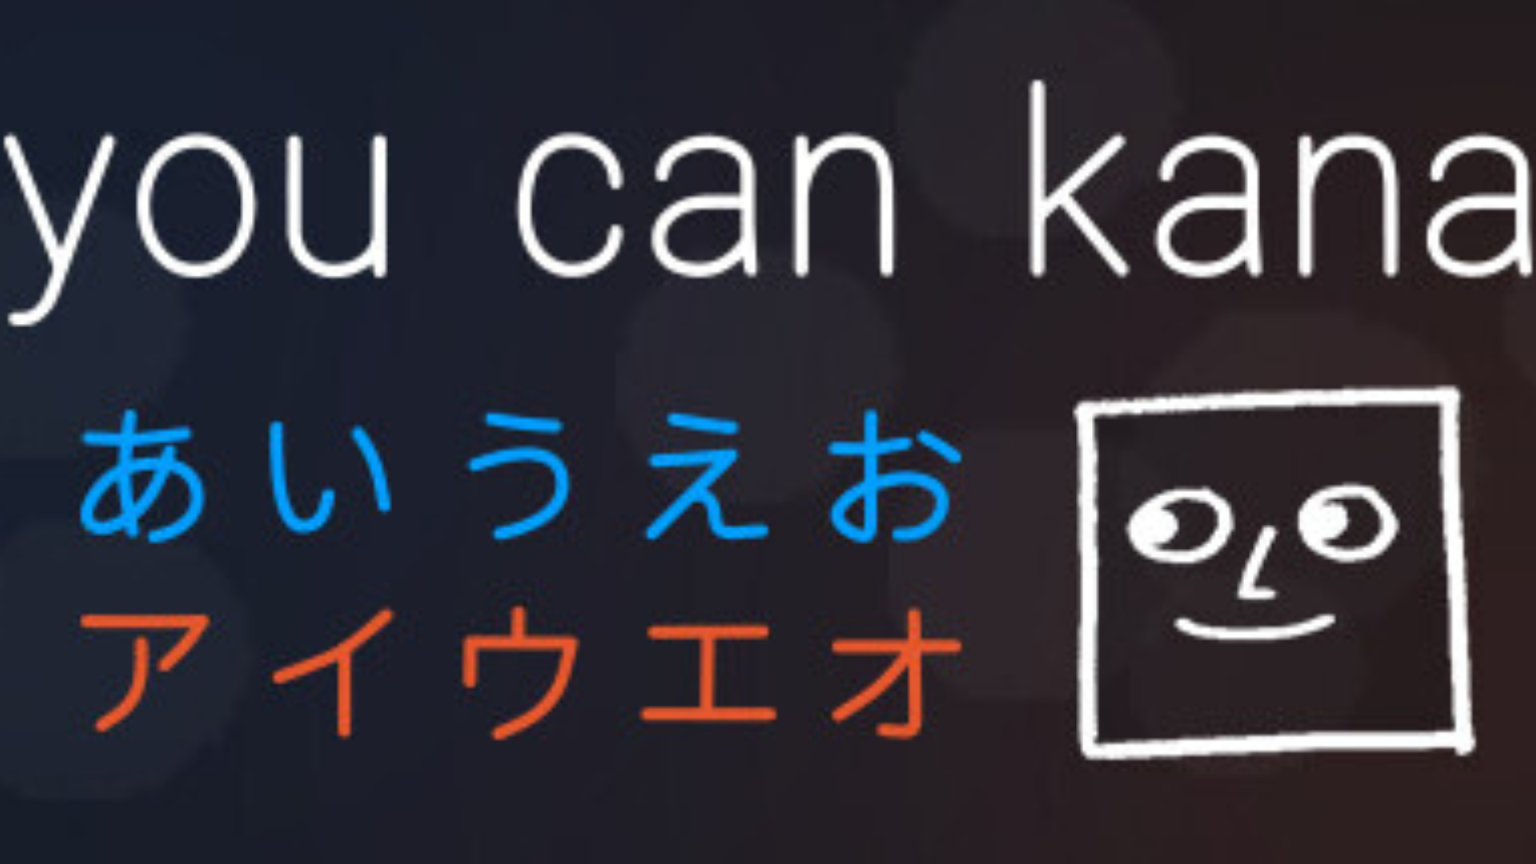 иллюстрации стим katakana фото 103